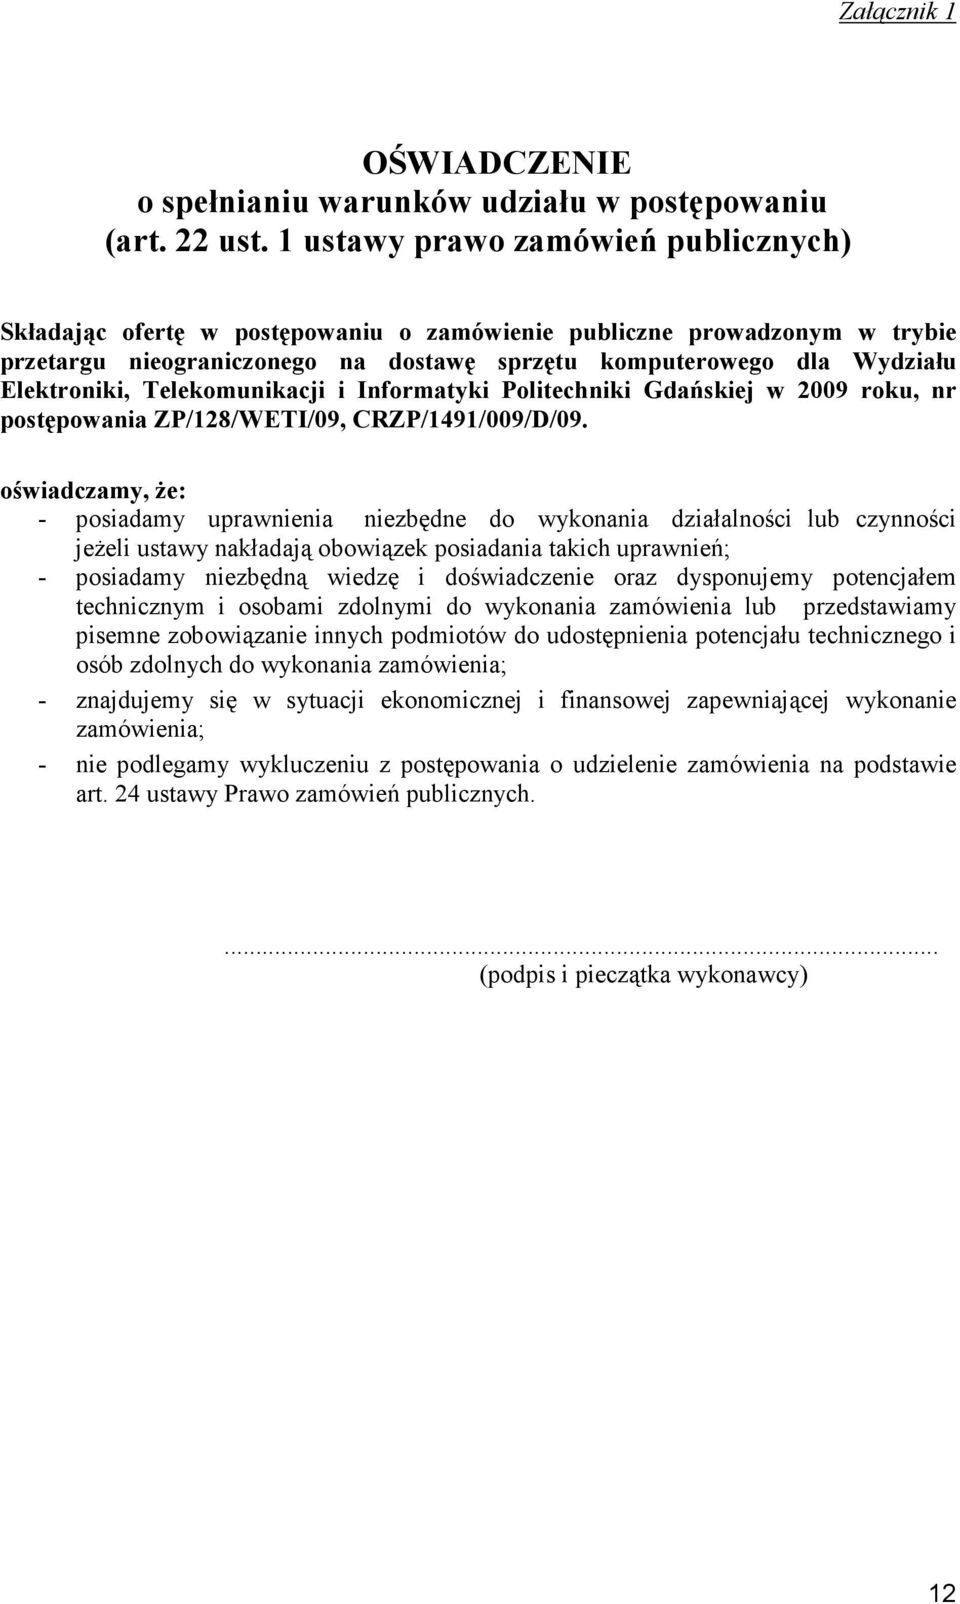 Telekomunikacji i Informatyki Politechniki Gdańskiej w 2009 roku, nr postępowania ZP/128/WETI/09, CRZP/1491/009/D/09.